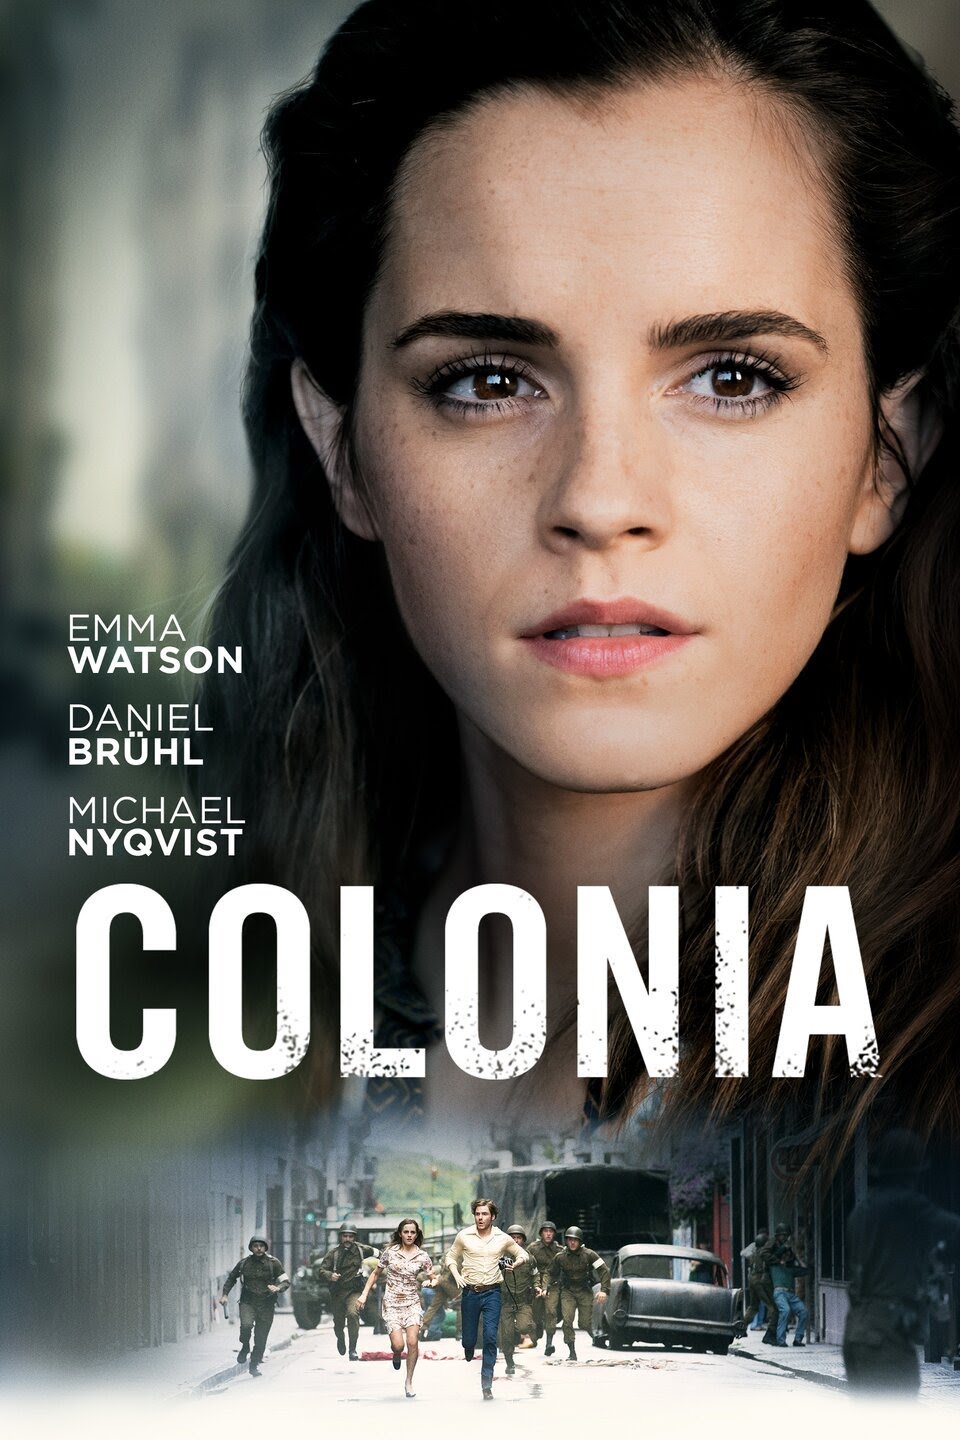 ดูหนังออนไลน์ Colonia 2016